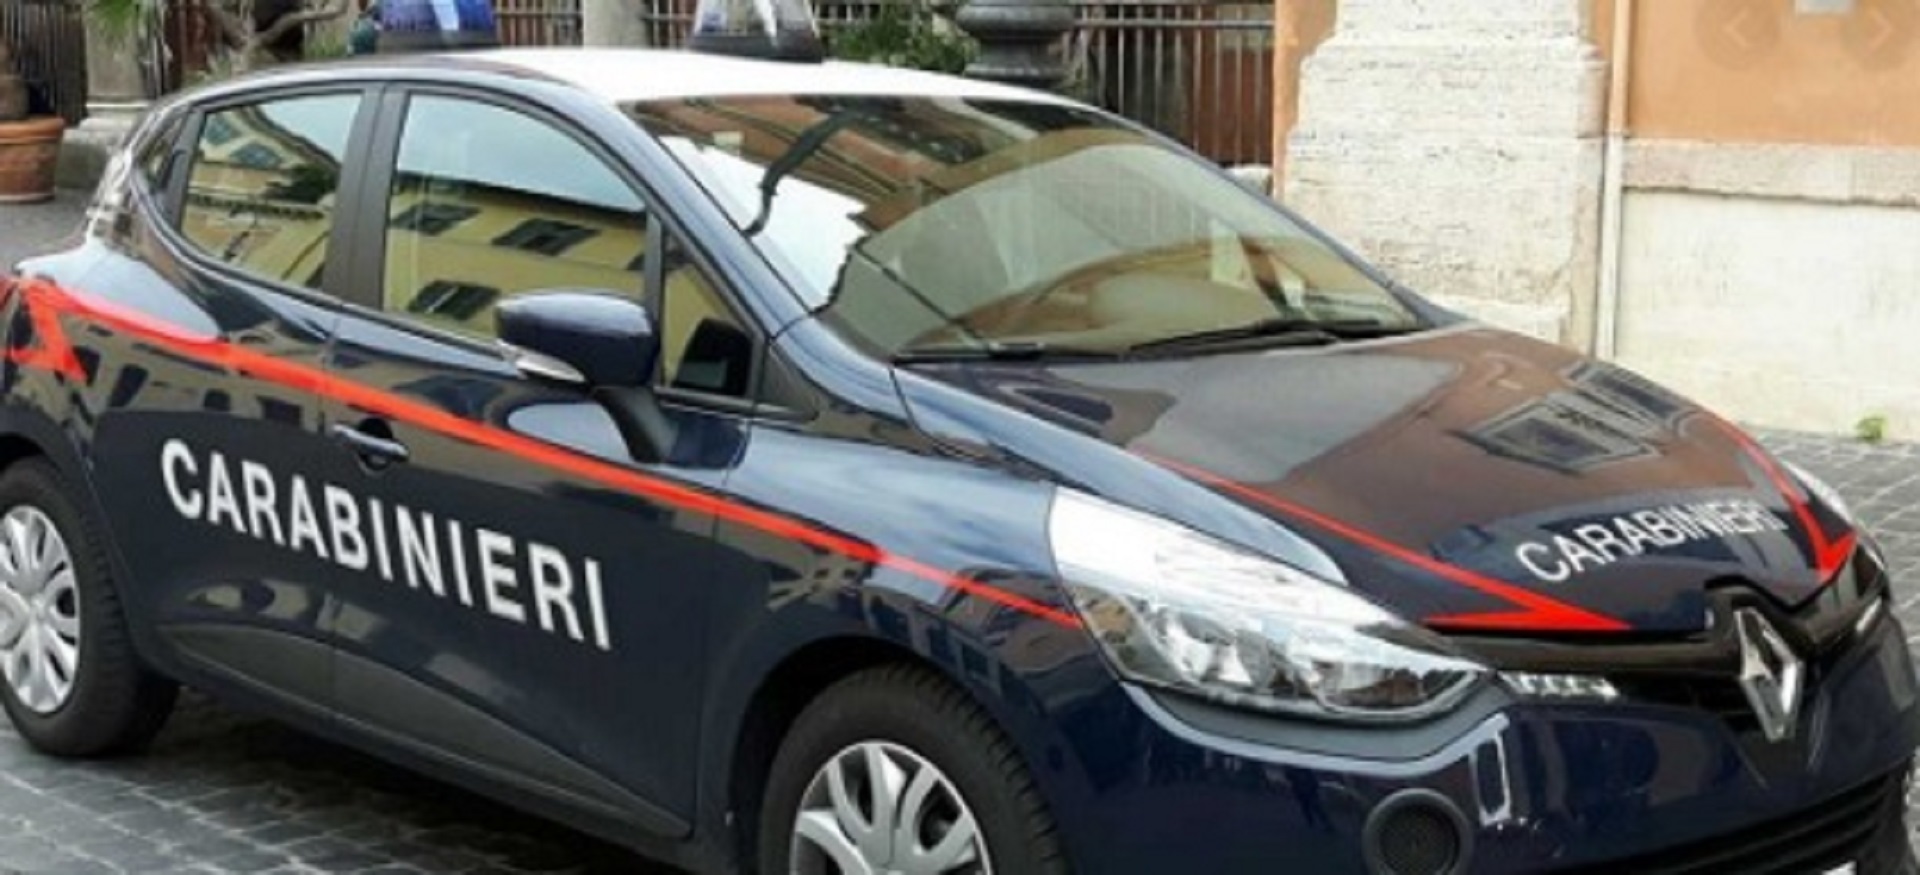 Nord Sardegna, blitz in appartamento: 32enne arrestato per droga